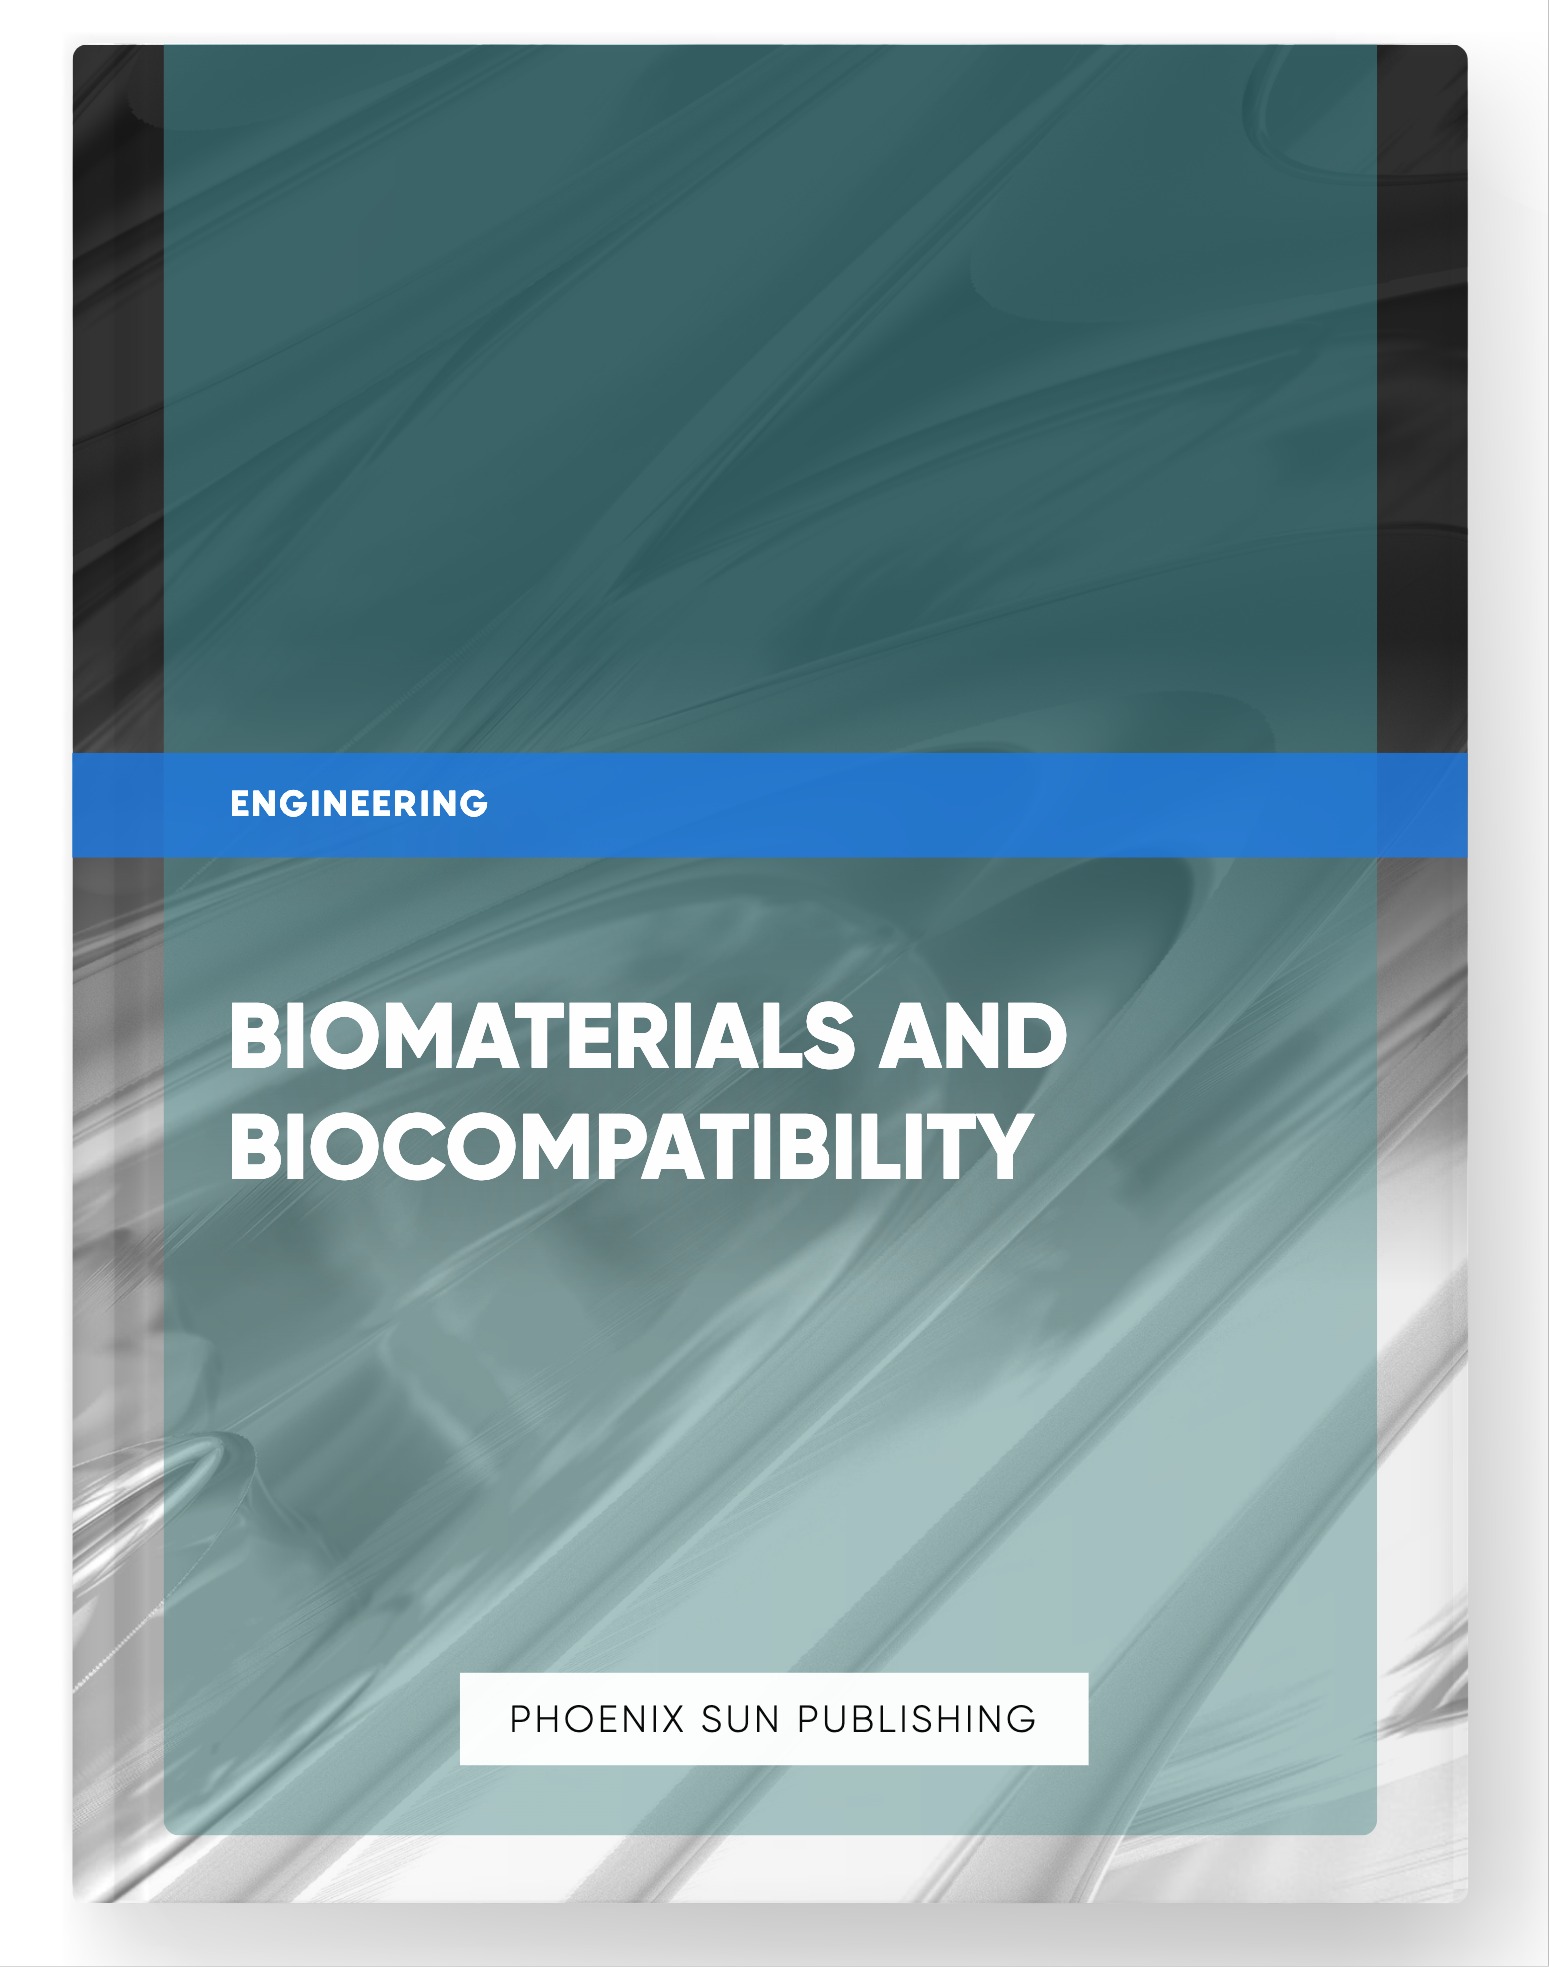 Biomaterials and Biocompatibility